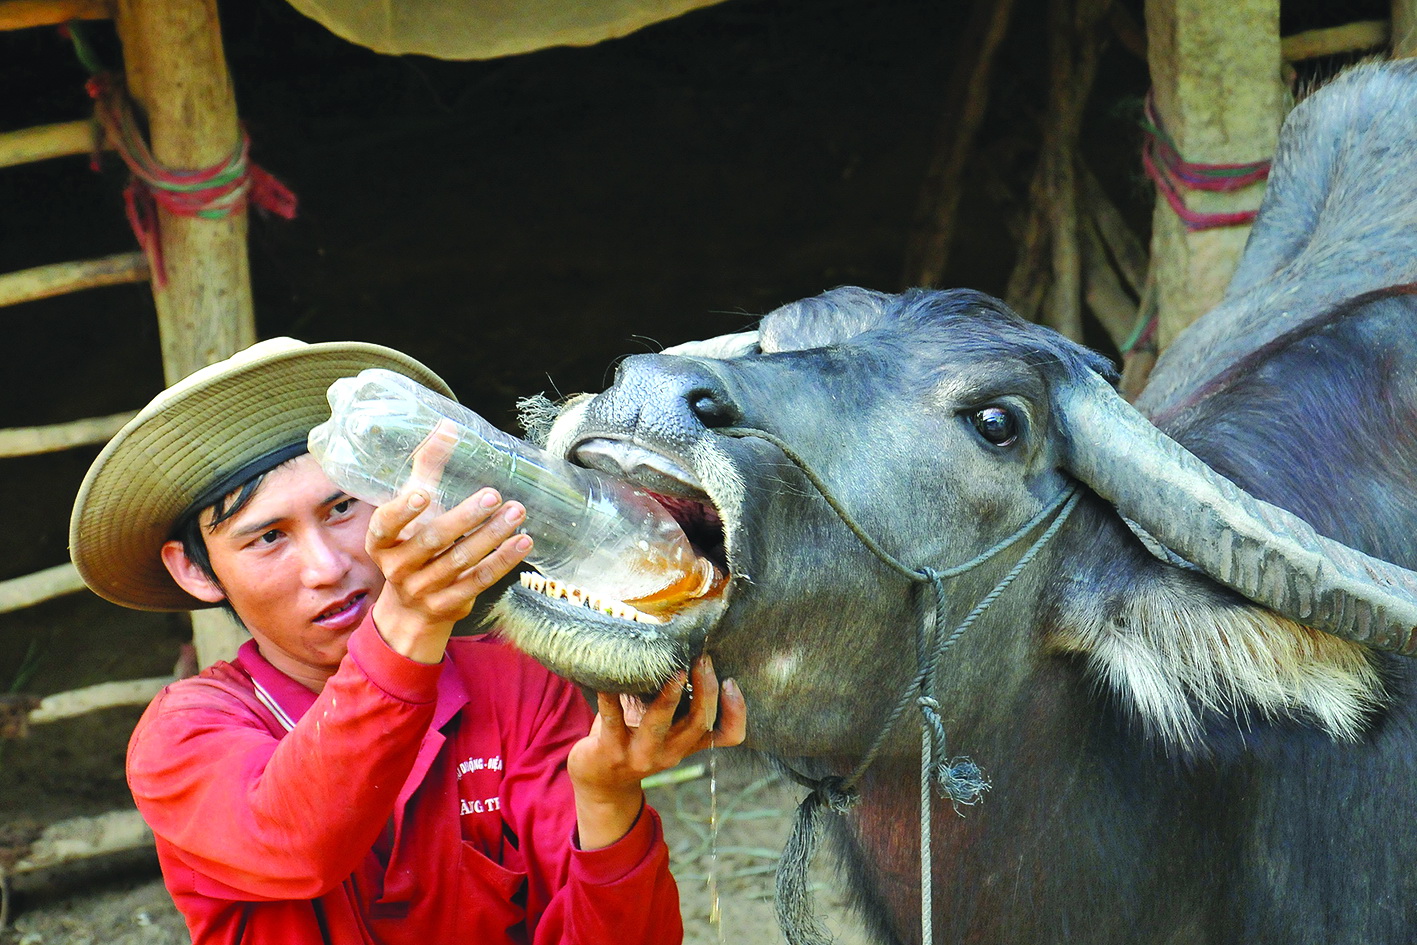 In Vietnam, farmers feed buffalo wine after hard work